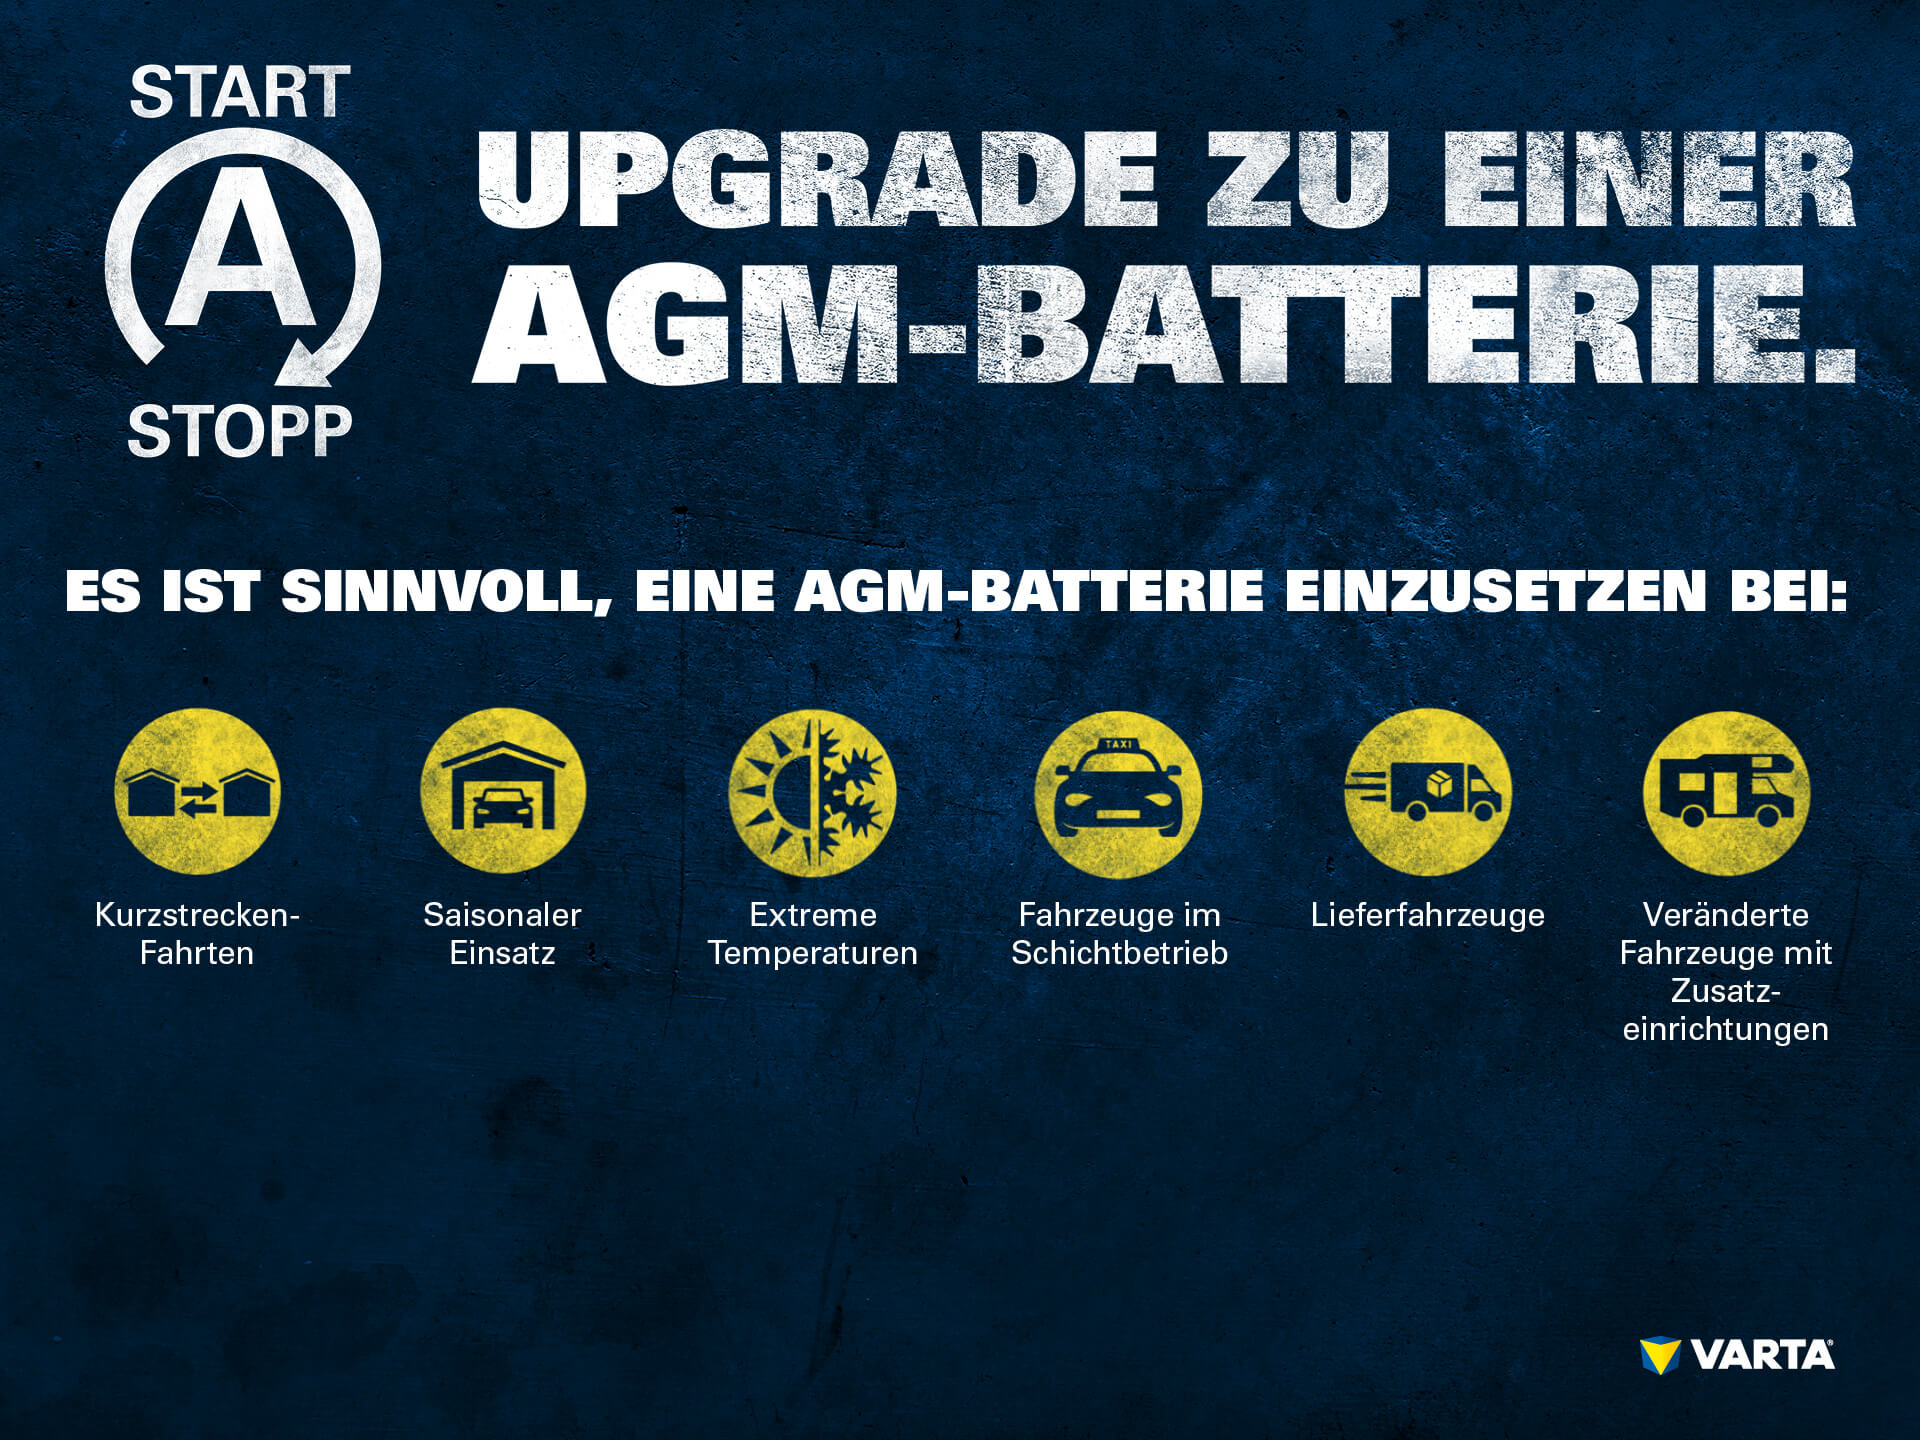 Ist ein Upgrade auf die besseren AGM Batterien empfehlenswert